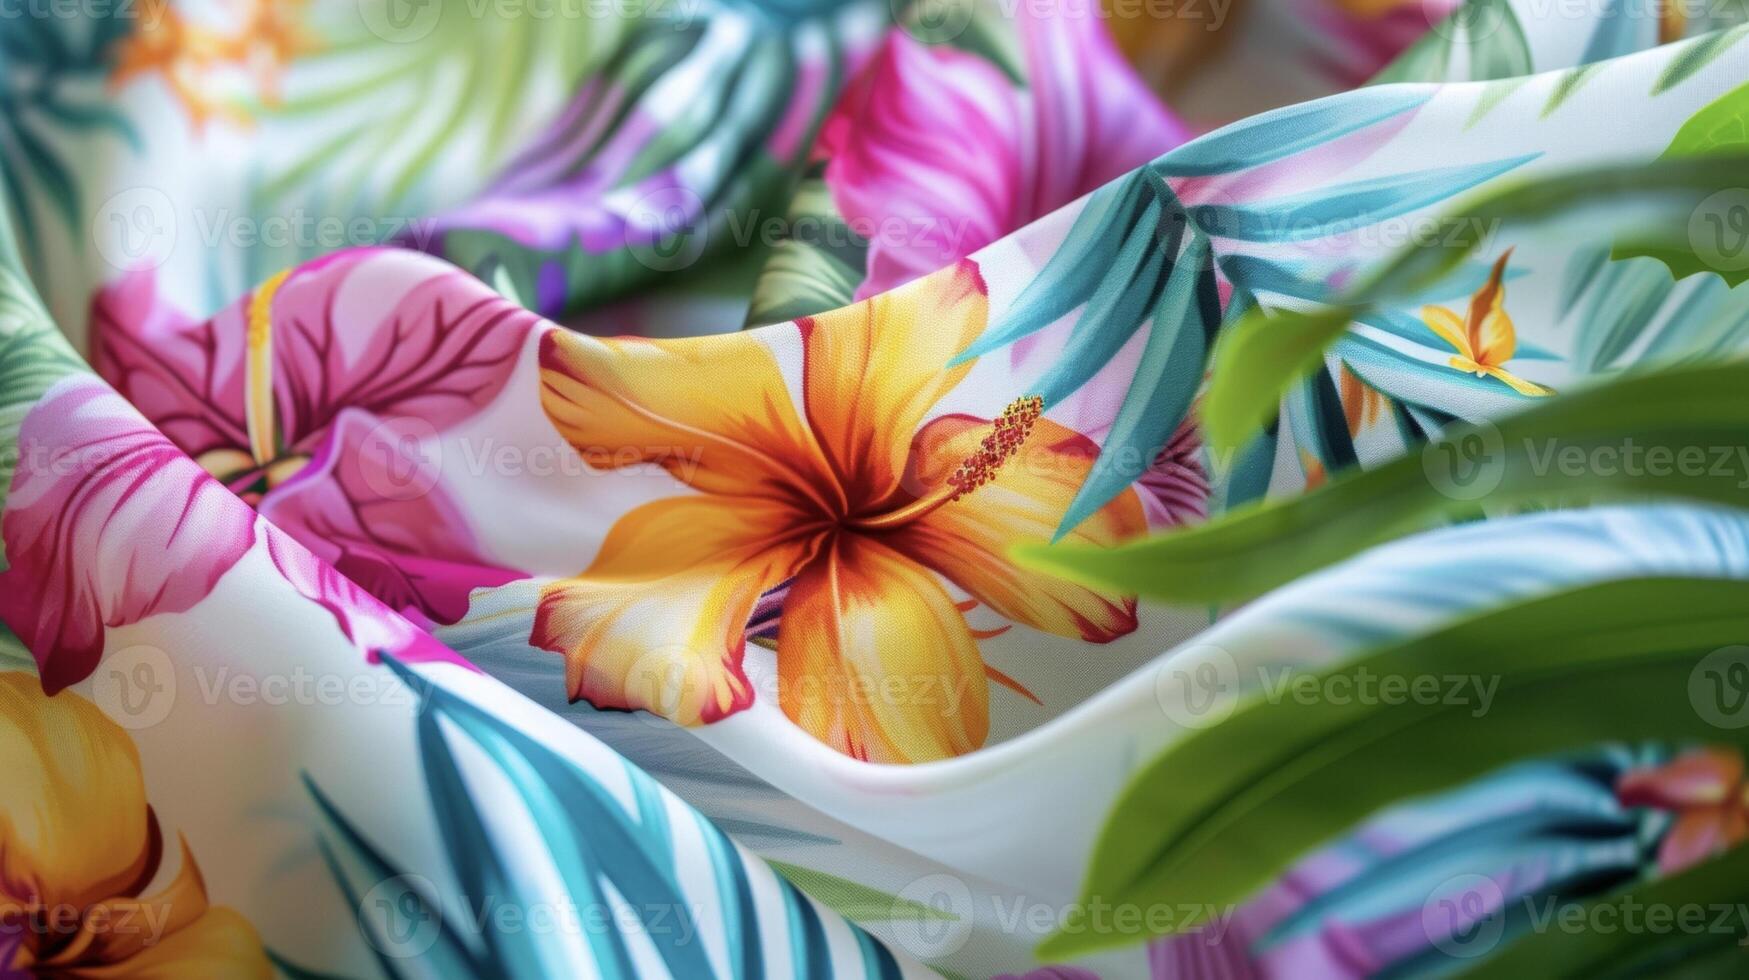 Transport du selber zu ein abgelegen Strand mit diese Sarong wickeln im ein bunt Mosaik drucken von tropisch Blumen und Blätter foto